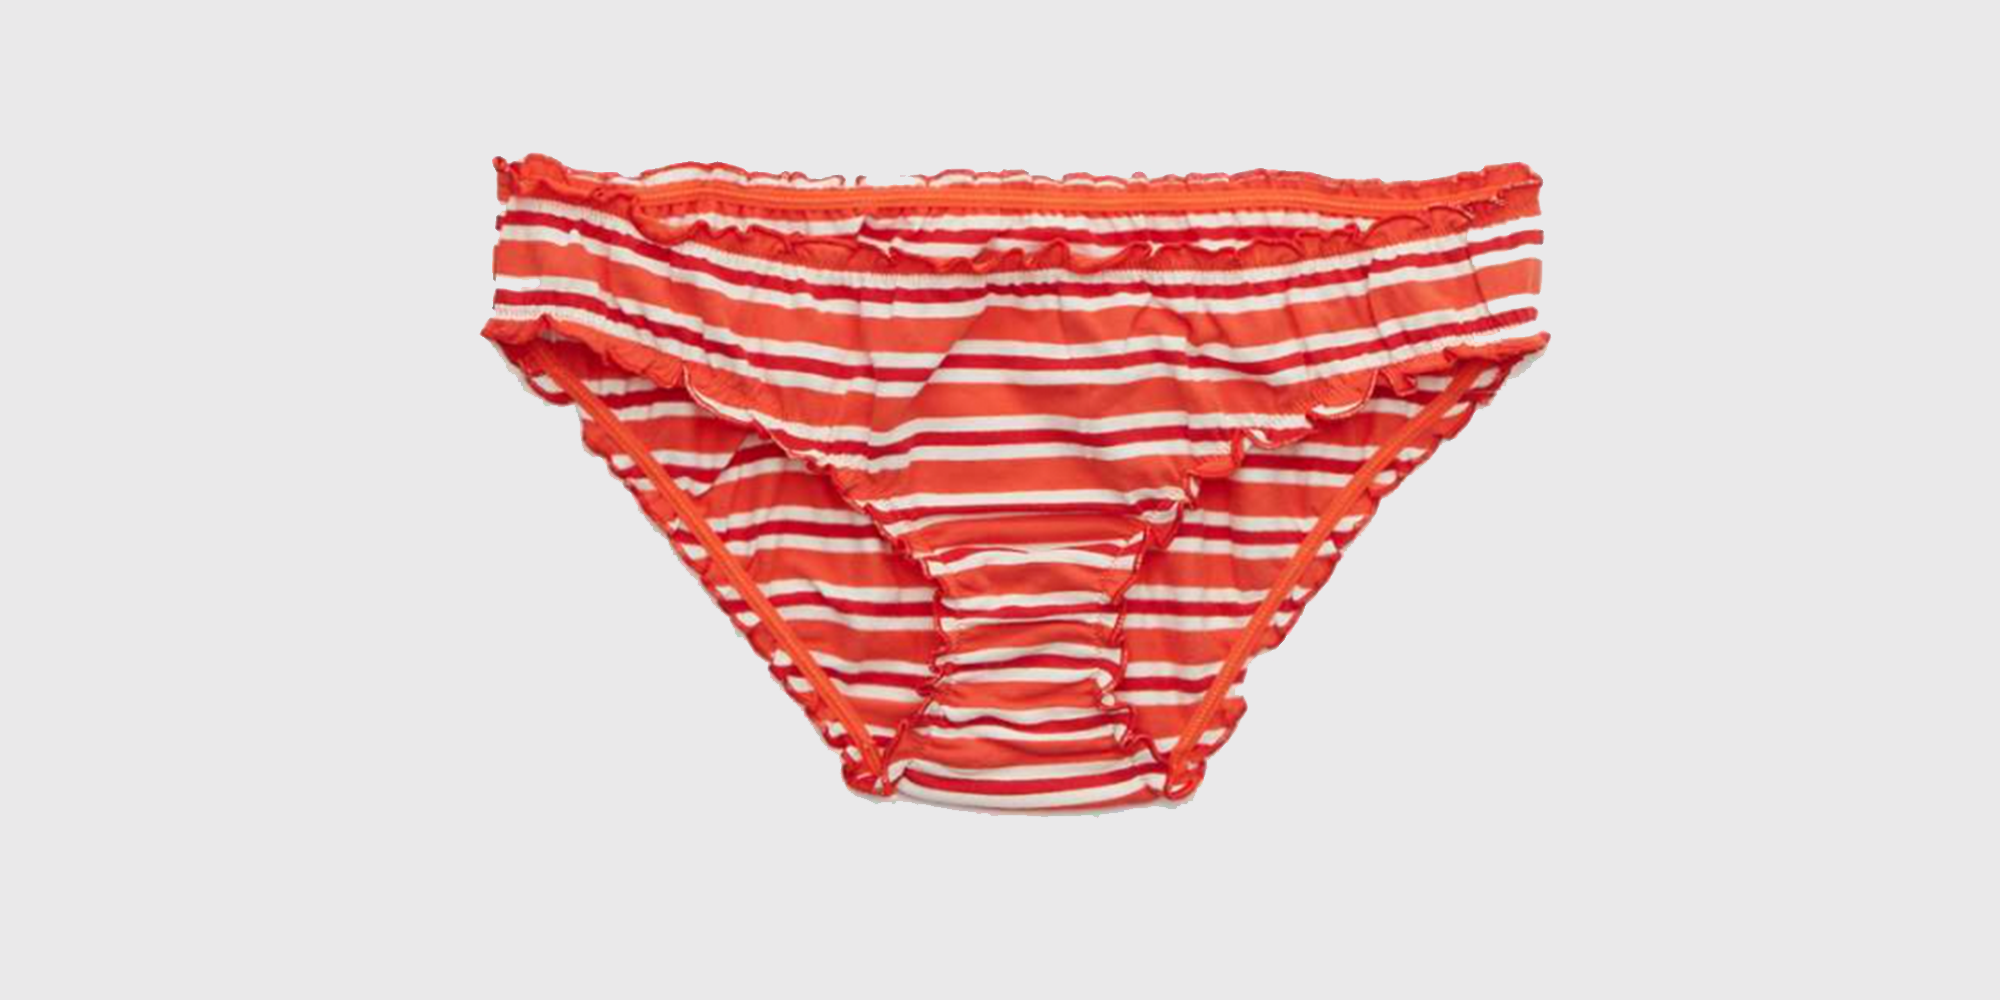 Best Underwear Women Images On Pinterest Tights 2